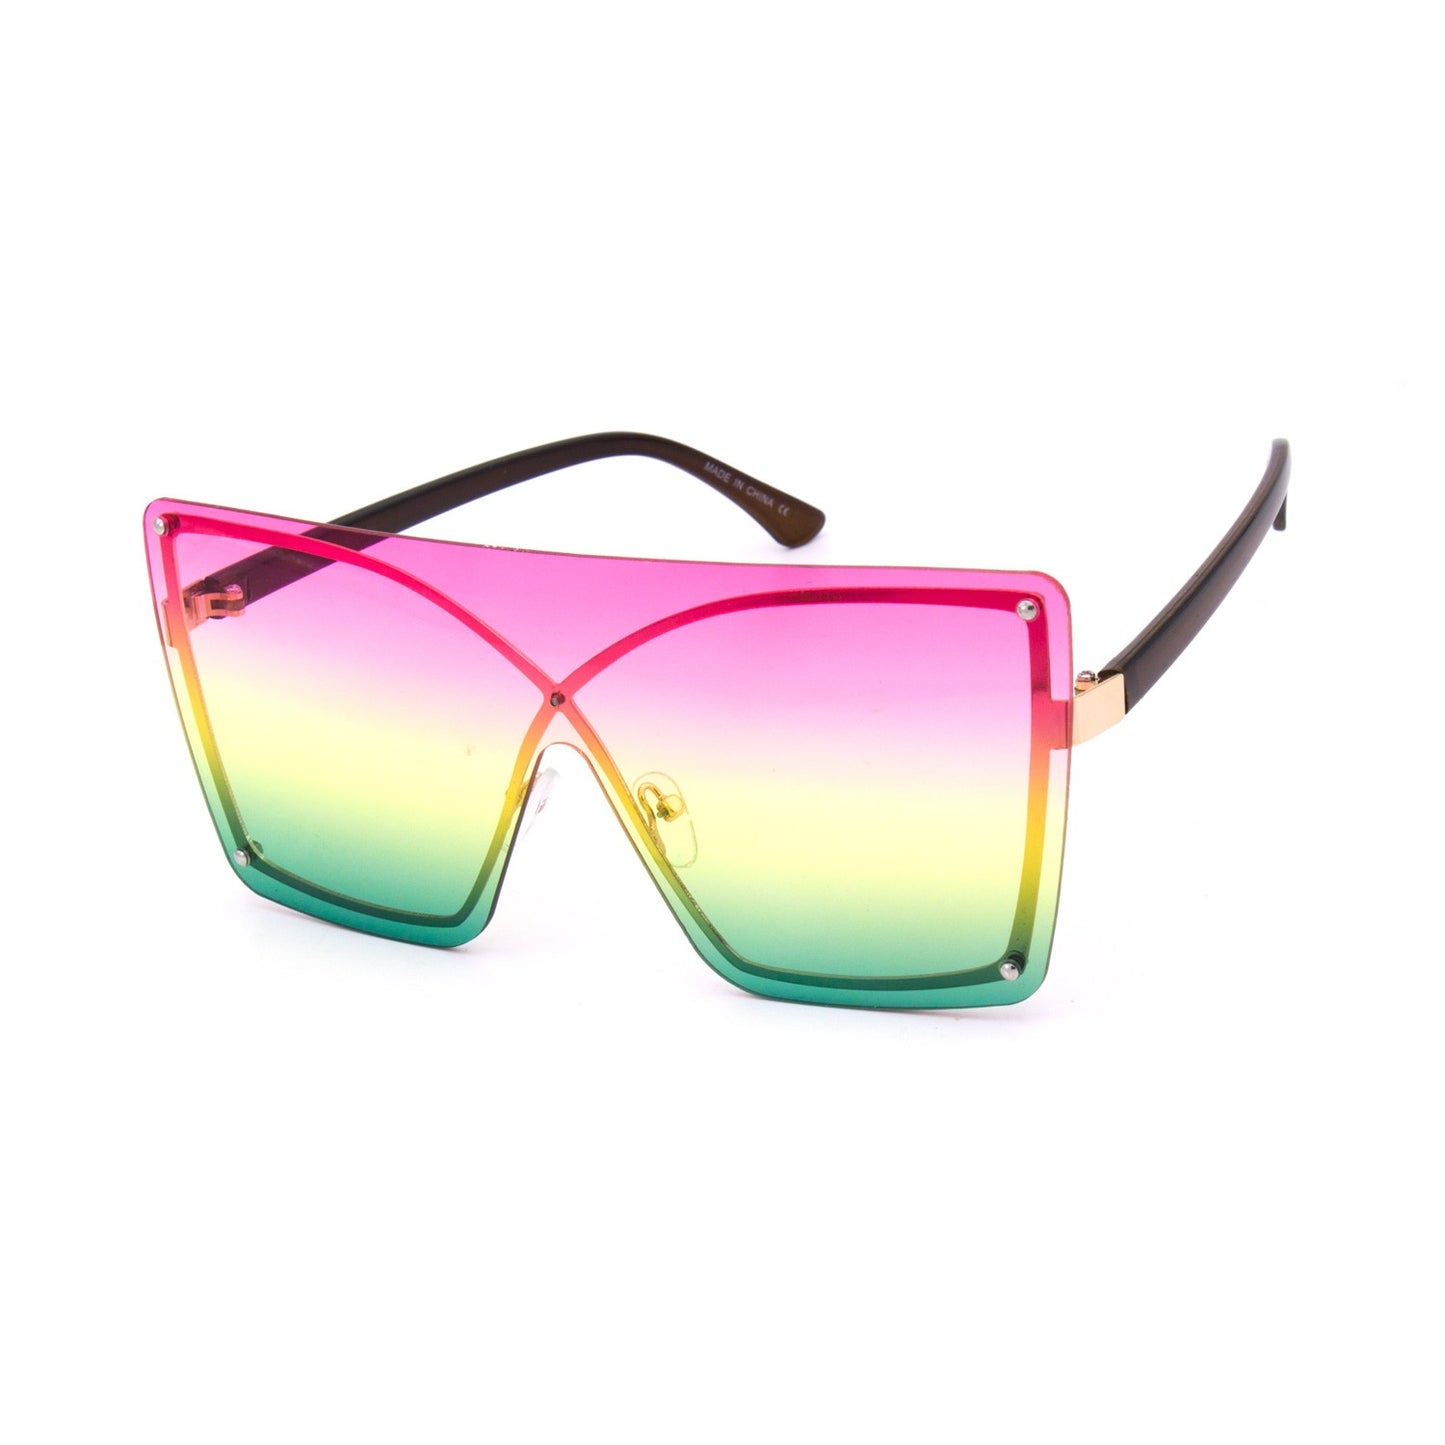 Trini Essie - Shield Sunglasses in Rasta